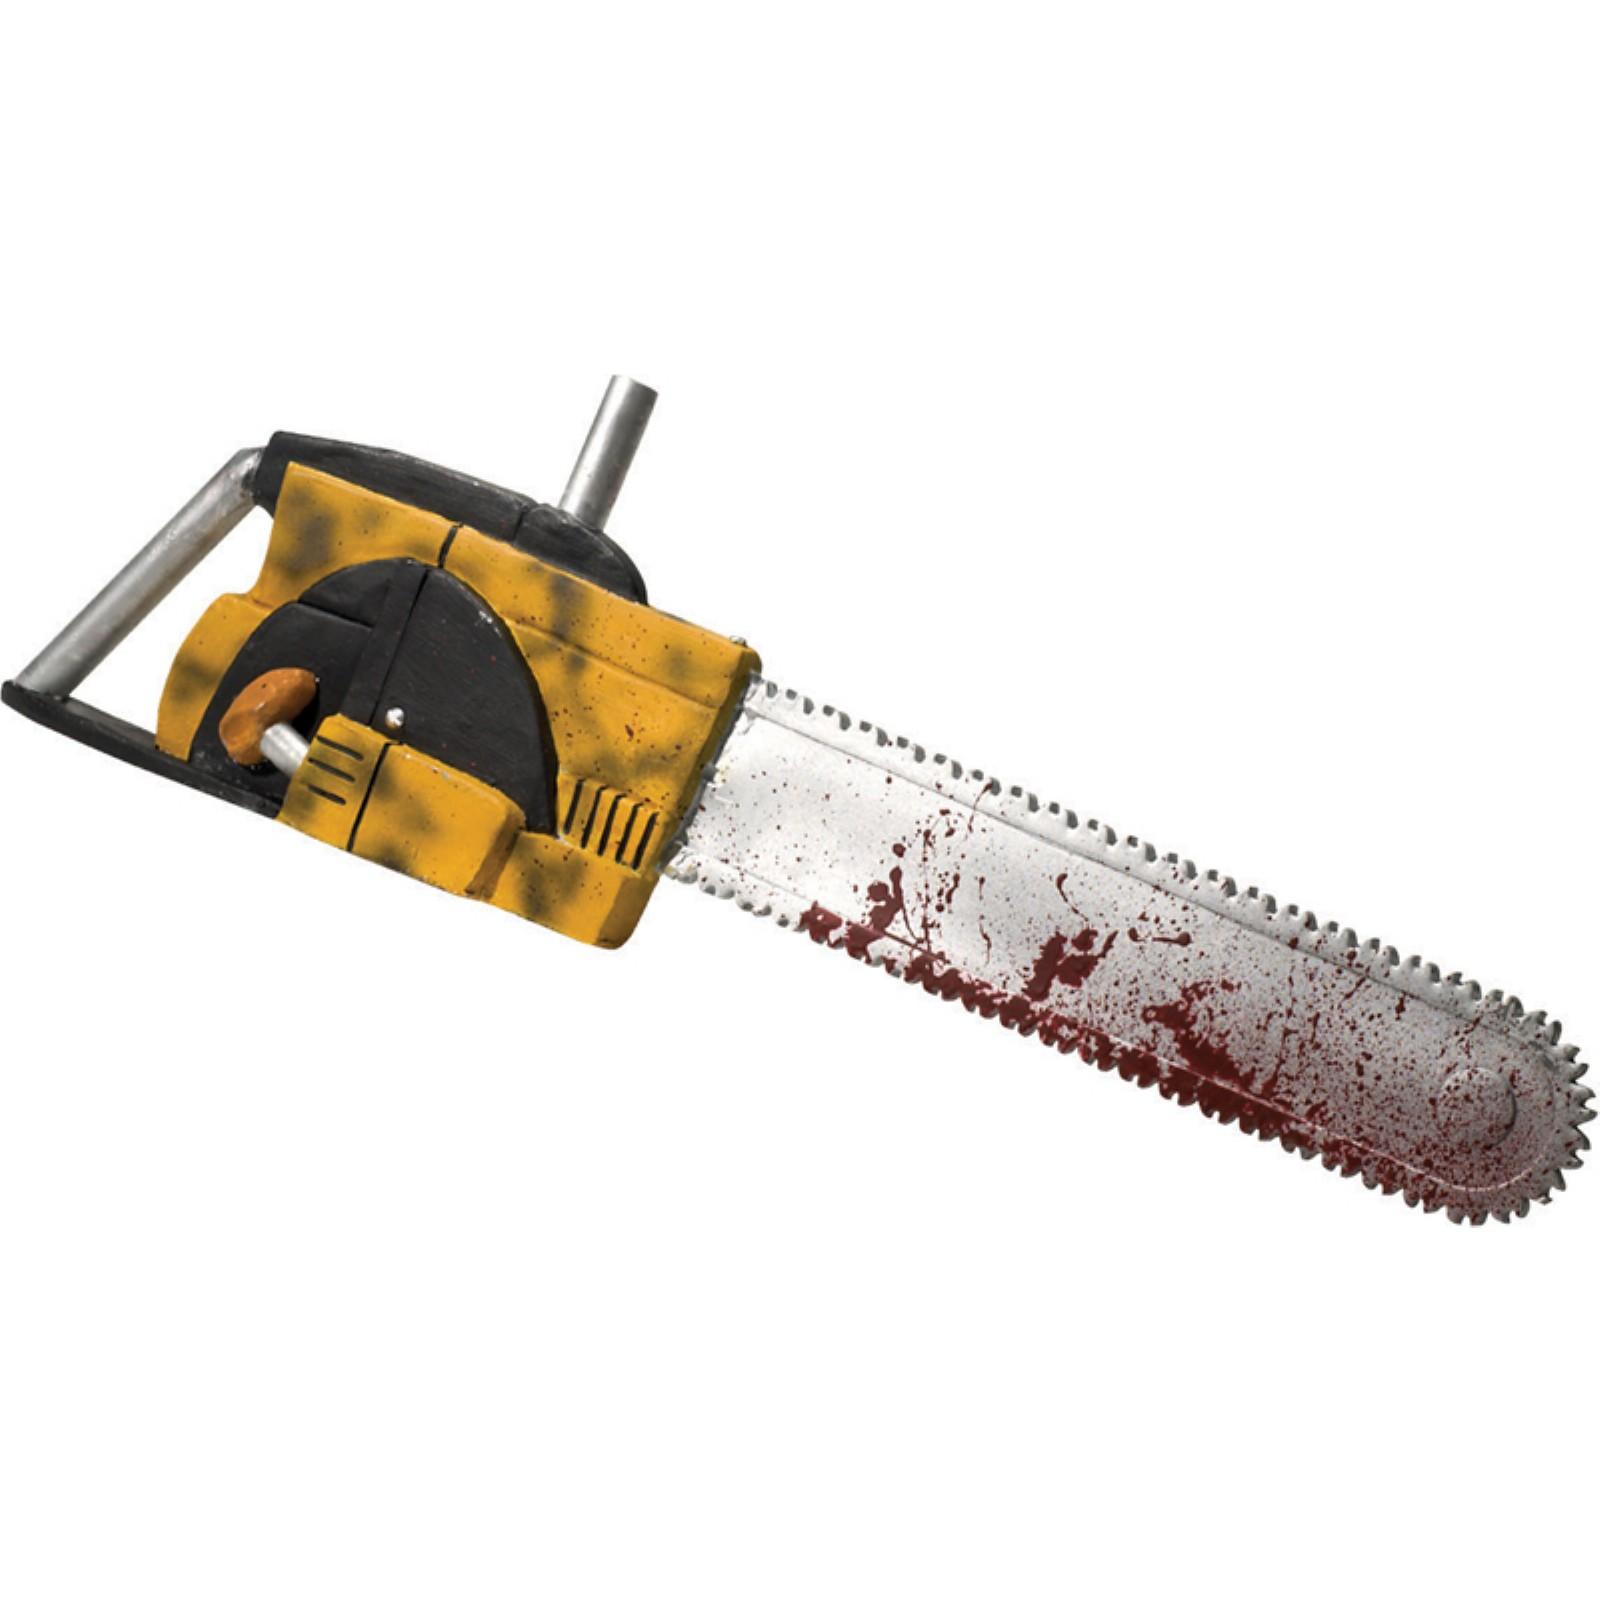 Chainsaw | The Texas Chainsaw Massacre Wiki | FANDOM ...
